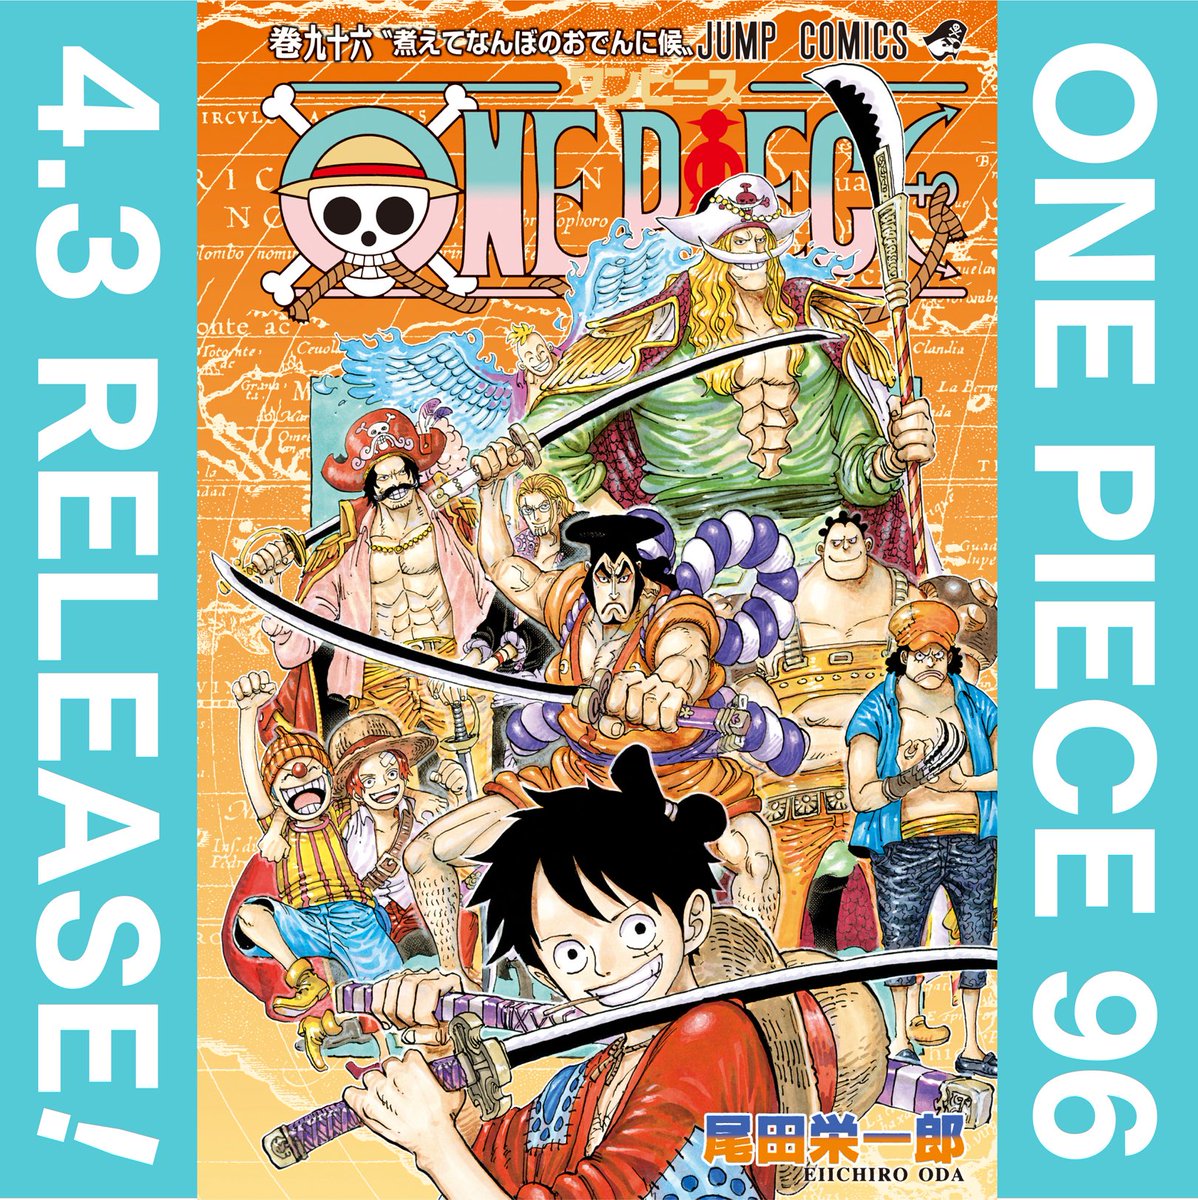 One Pieceスタッフ 公式 みんな最新96巻発売中だよー カバーから興奮度やばいけど 中身がこれまた凄過ぎて ネタバレなっちゃうから言えないけど ほんと全伏線 回収開始 みんなの感想はハッシュタグ ワンピ新刊 をつけて呟いてね みんなの